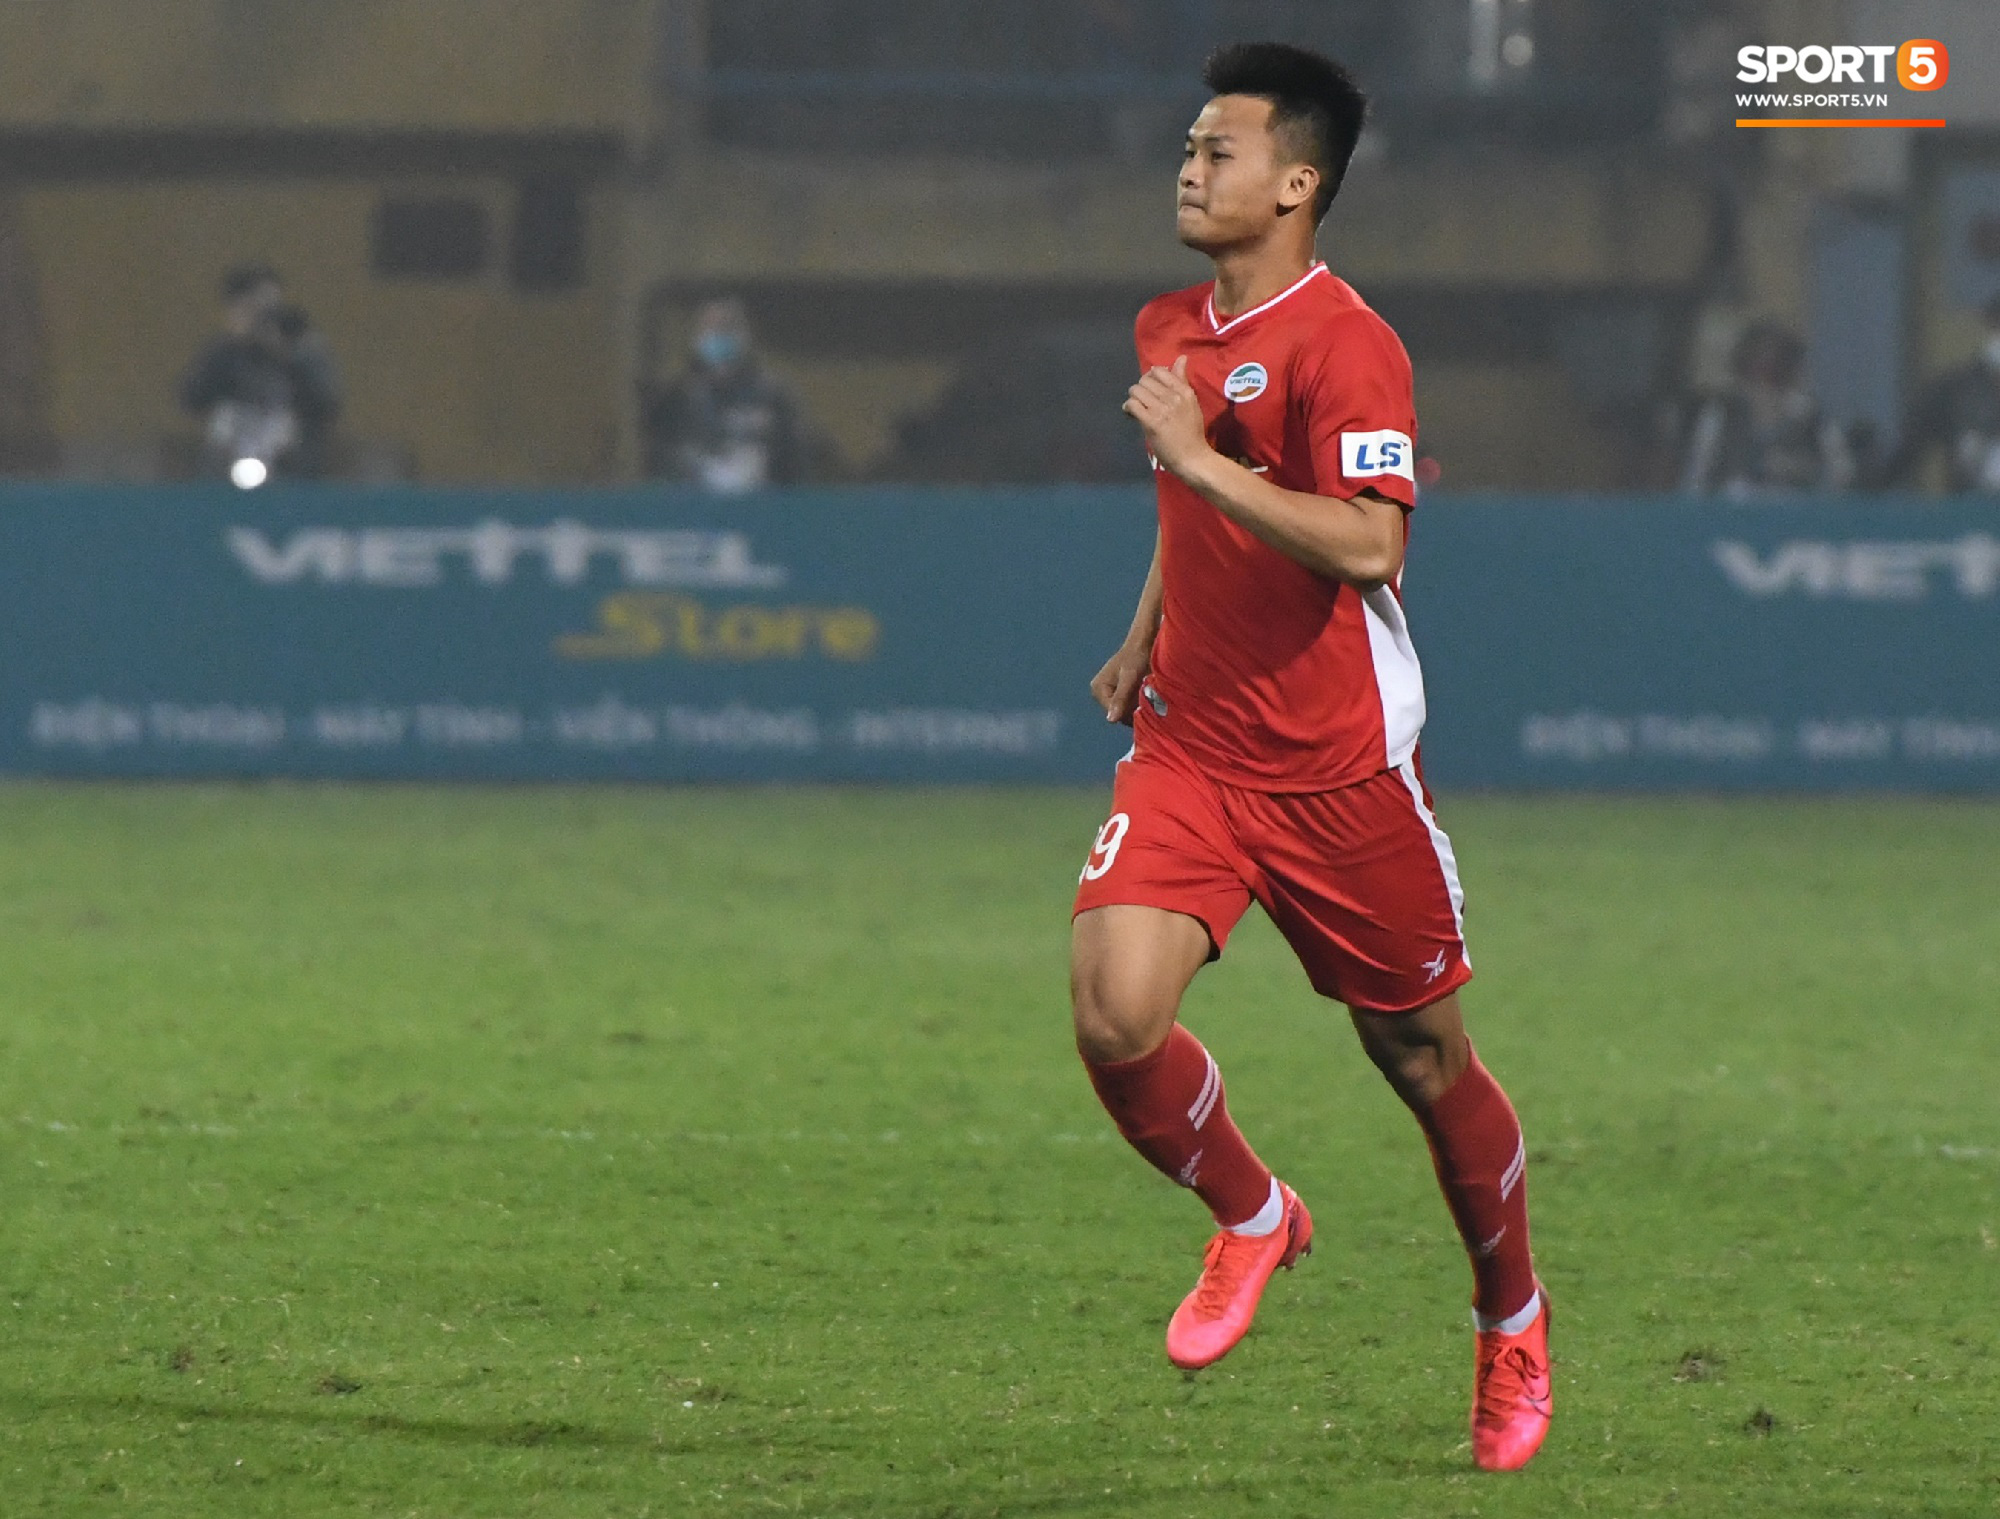 Cựu tuyển thủ U20 hồi sinh thần kỳ 2 năm sau chấn thương kinh hoàng nhất nhì bóng đá Việt, ghi điểm mạnh với trợ lý Lee Young-jin   - Ảnh 2.